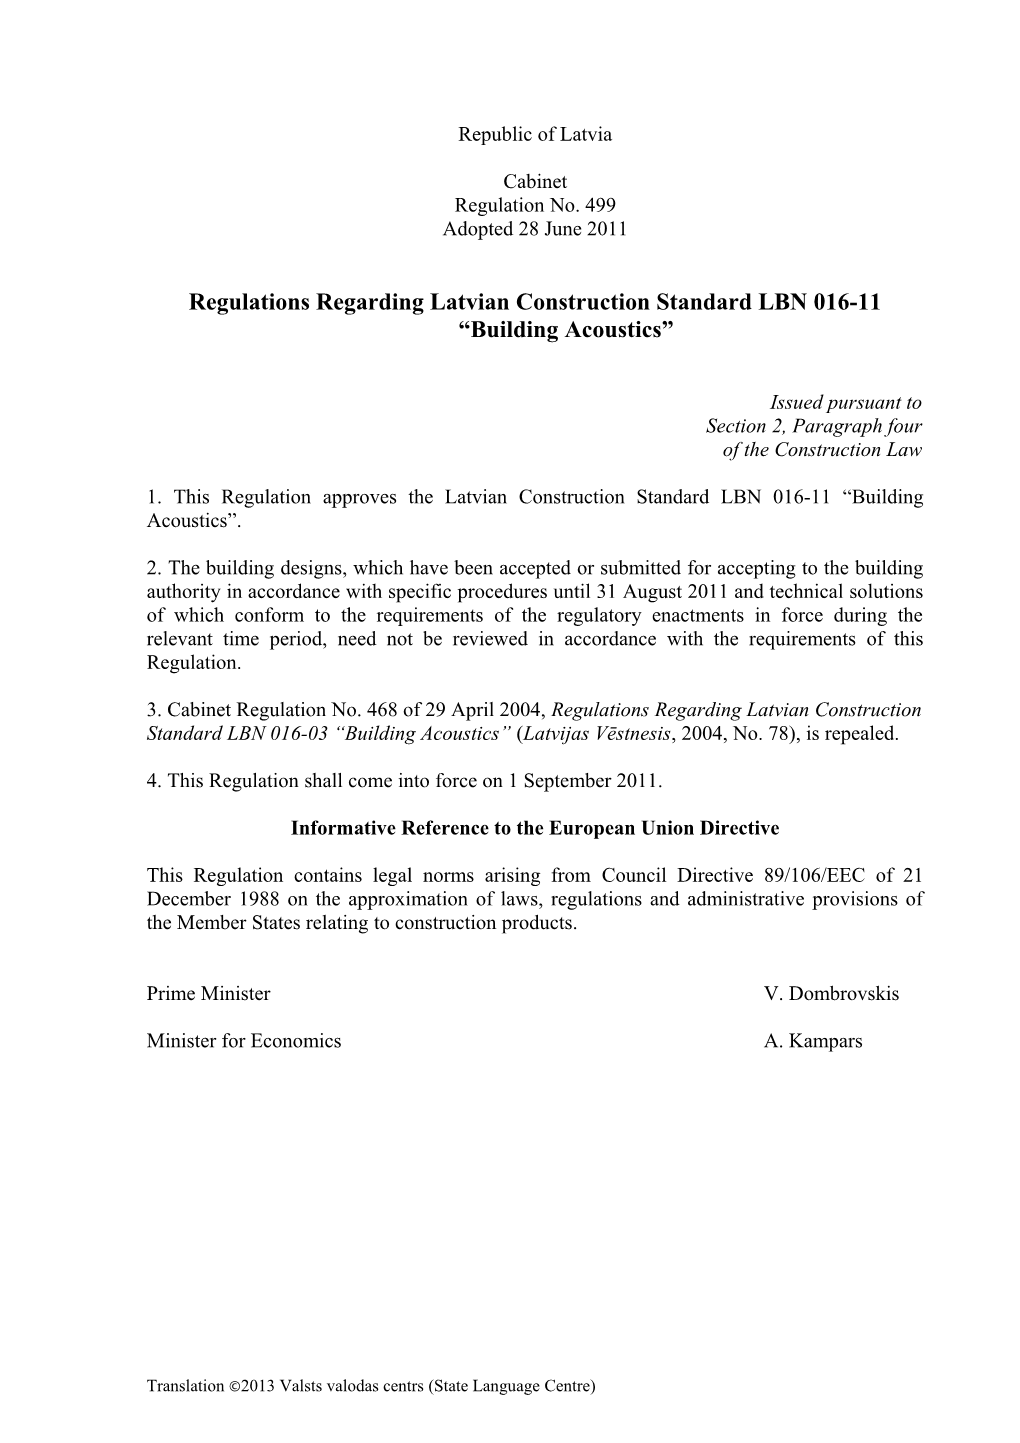 Regulations Regarding Latvian Construction Standard LBN 016-11 Building Acoustics